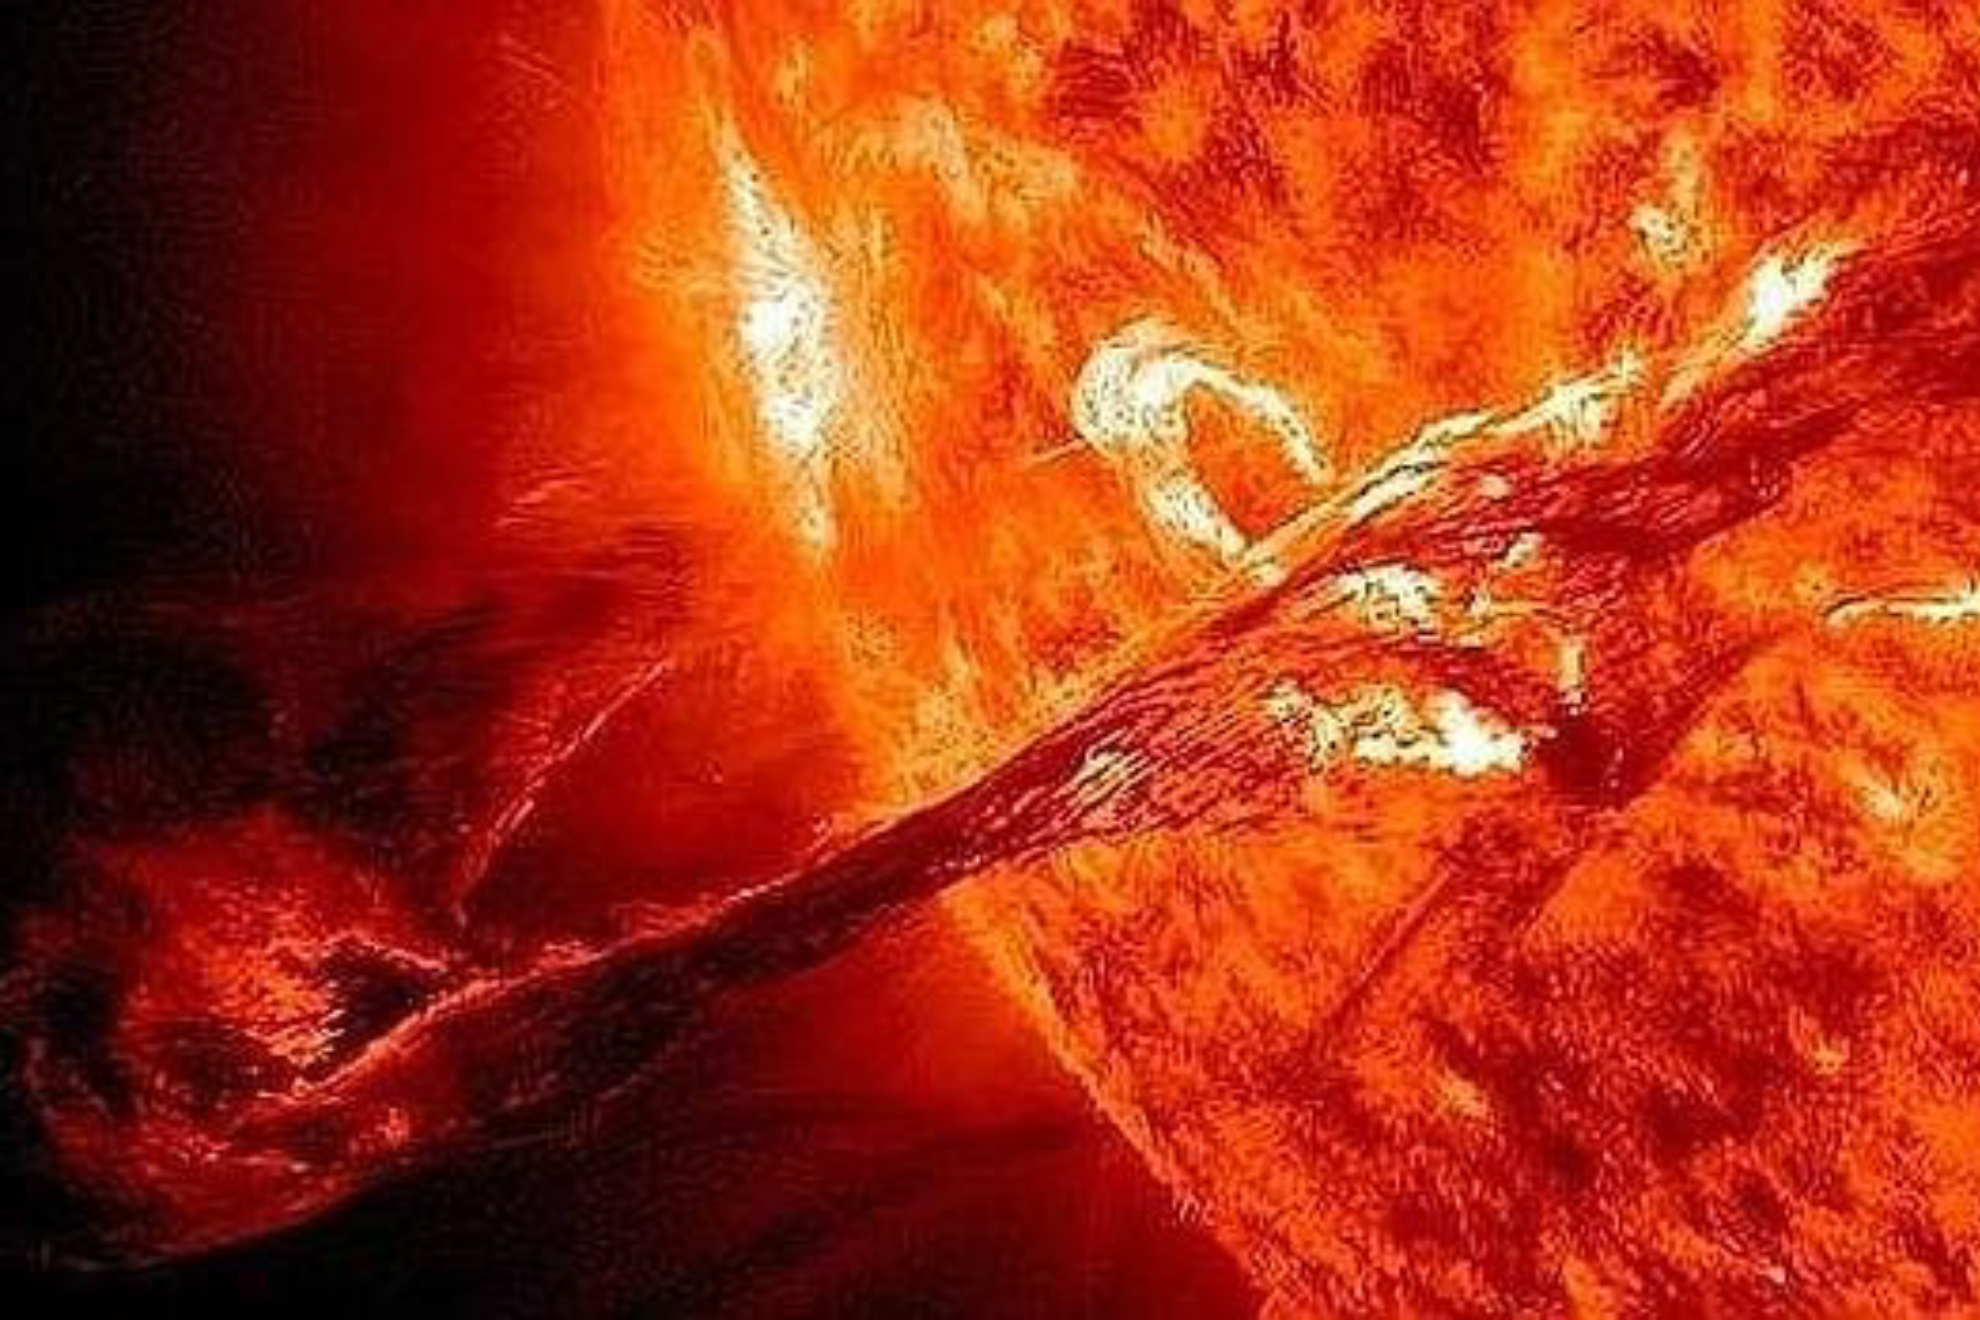 Tormenta solar canbal dejar sentir sus efectos en la Tierra